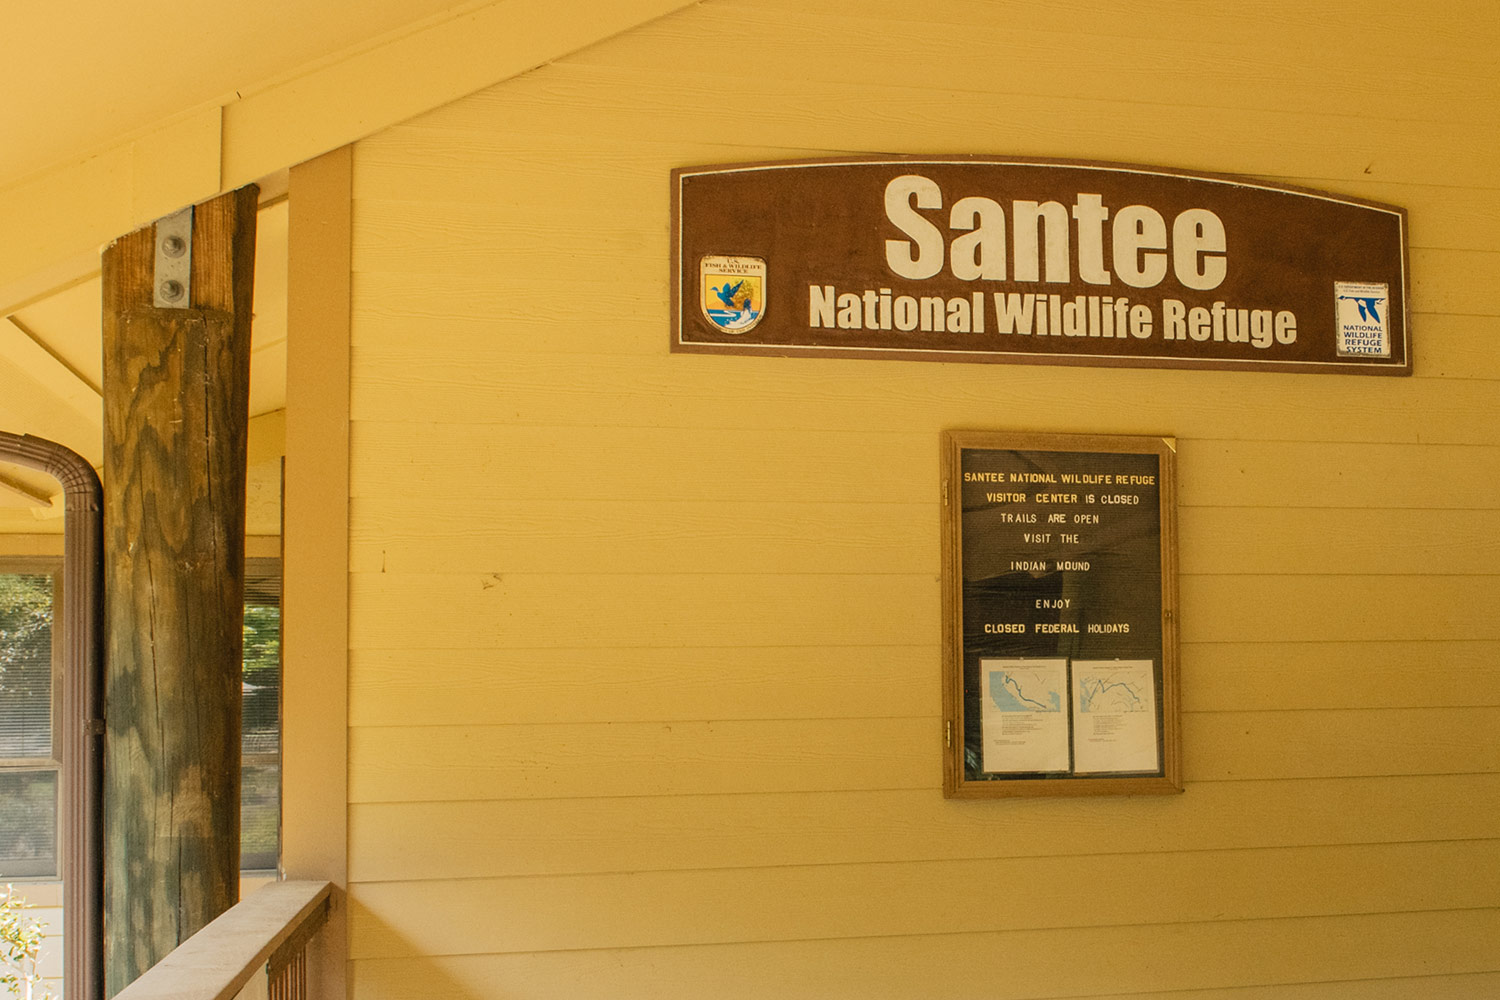 Santee National Wildlife Refuge sign on building